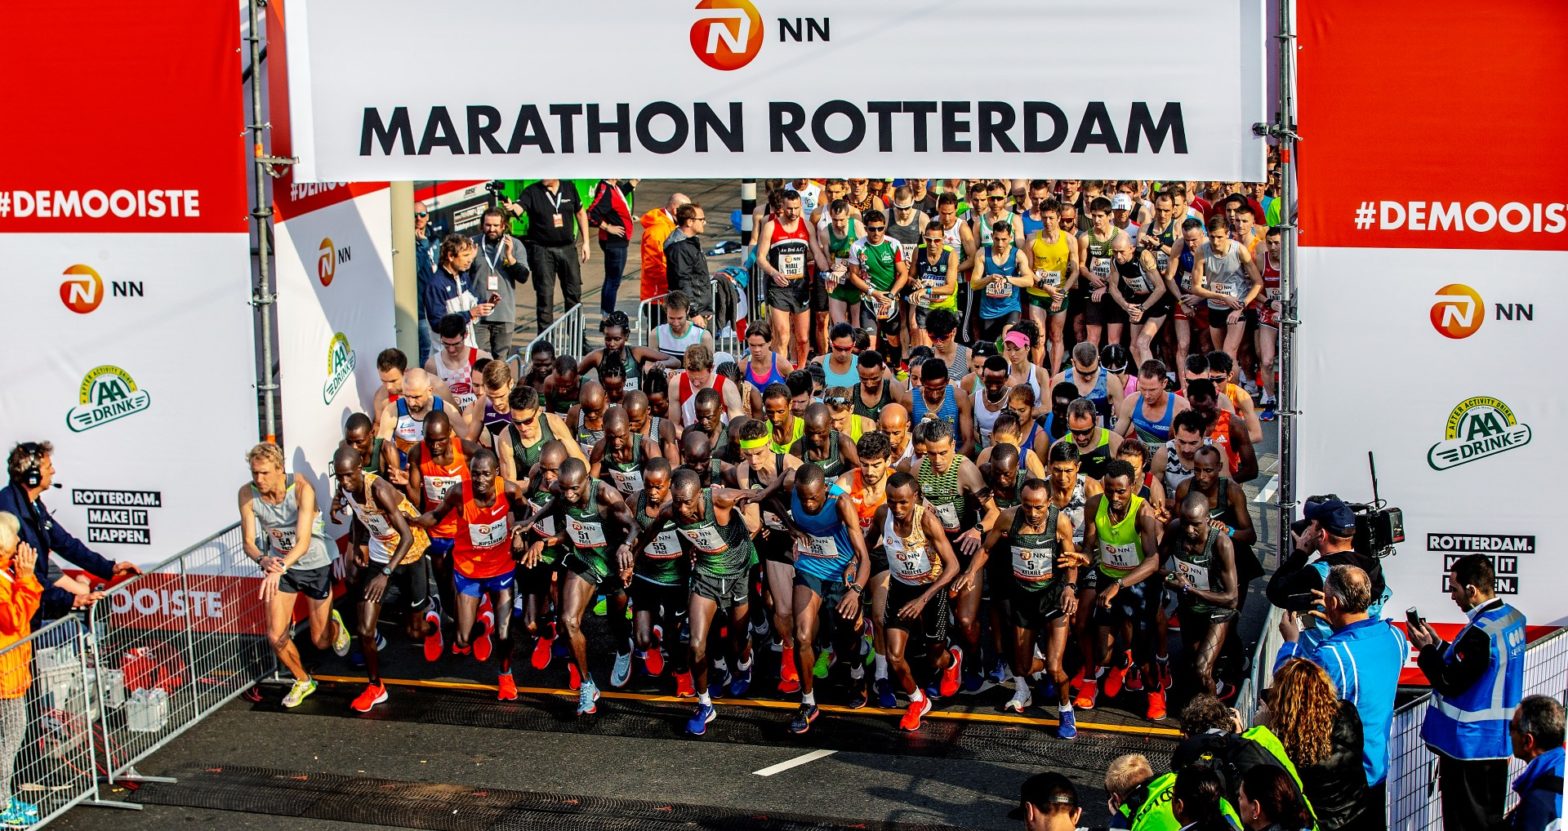 HOKA ONE ONE® startet Partnerschaft mit dem NN Marathon Rotterdam 2021